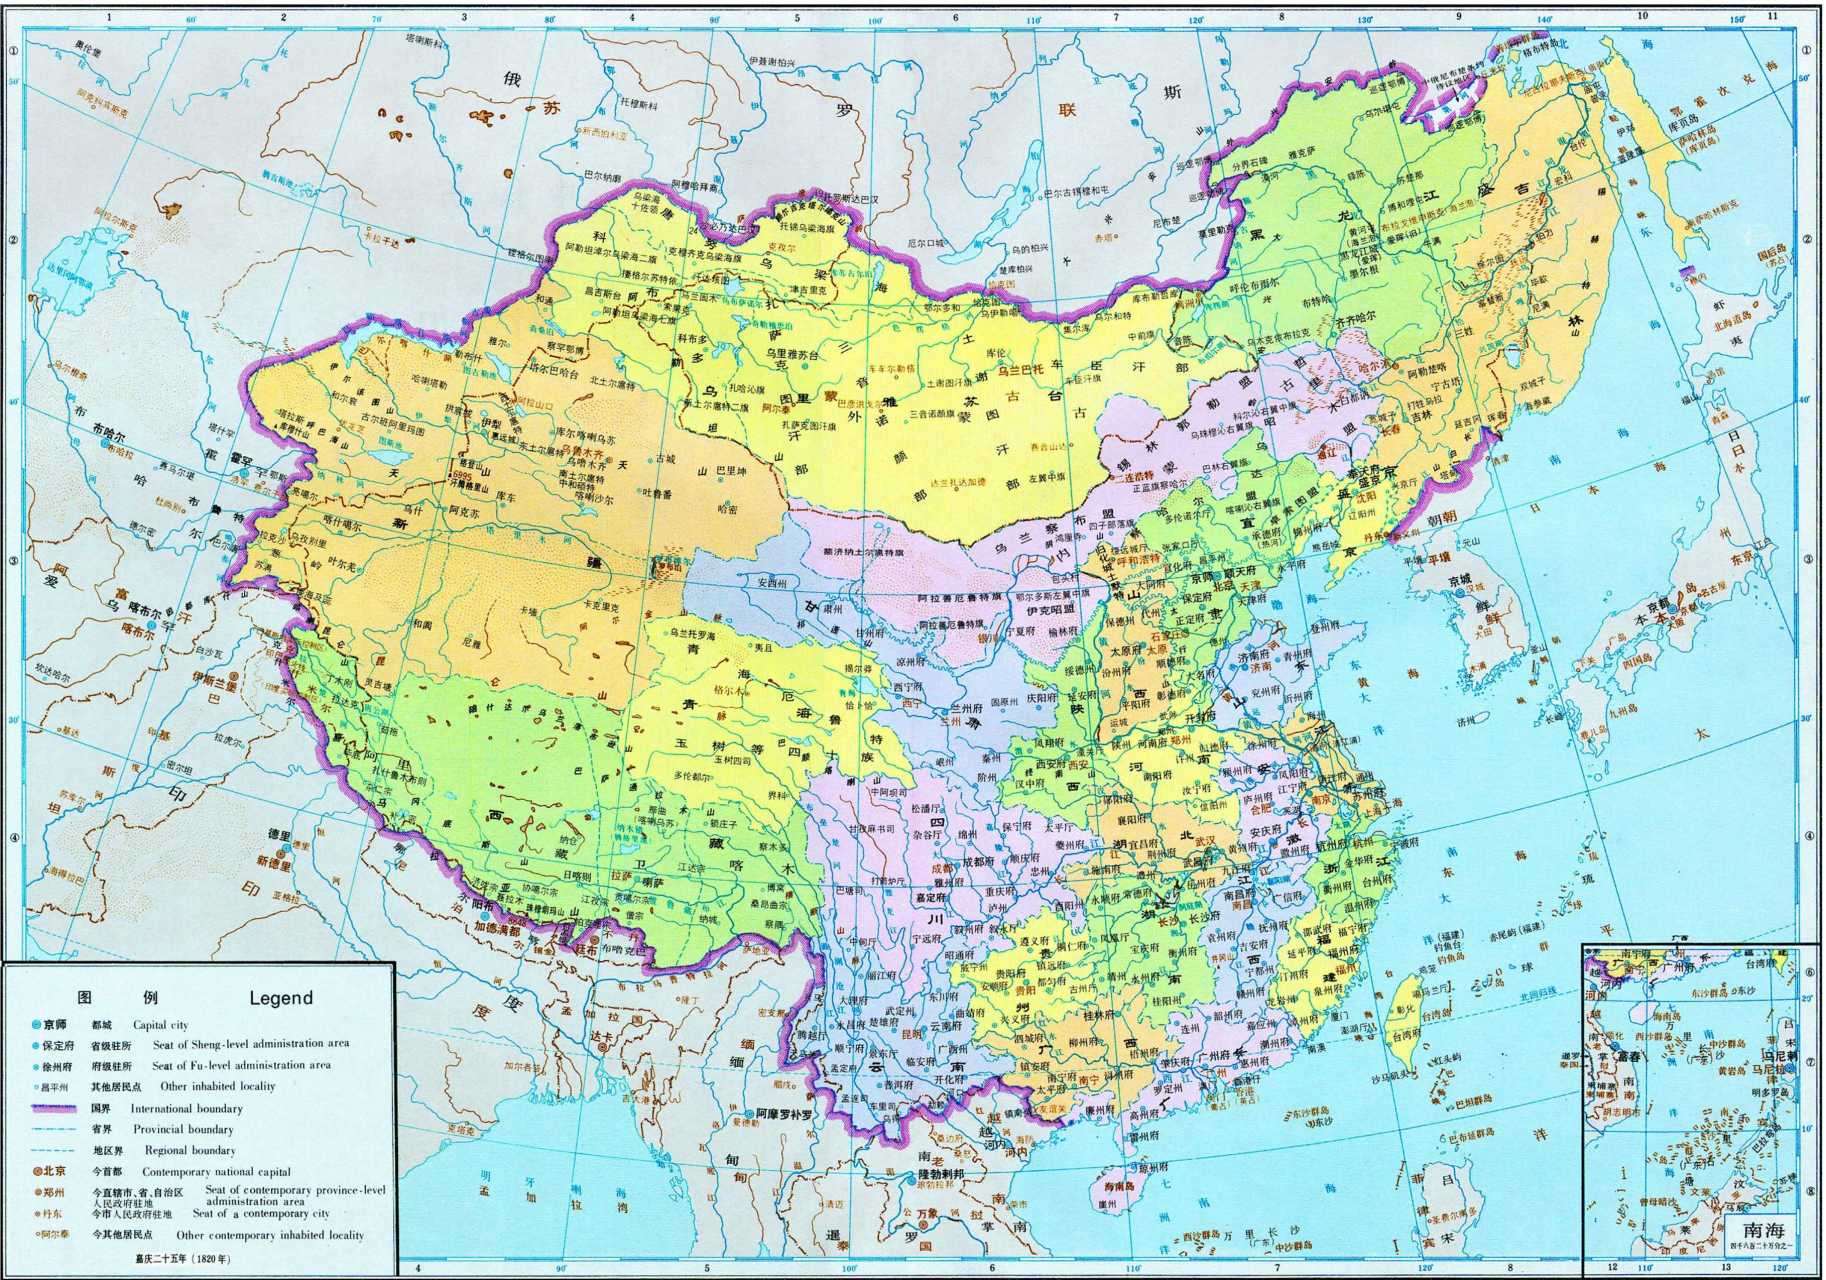 清朝疆域全盛图 (图片来源于网络)